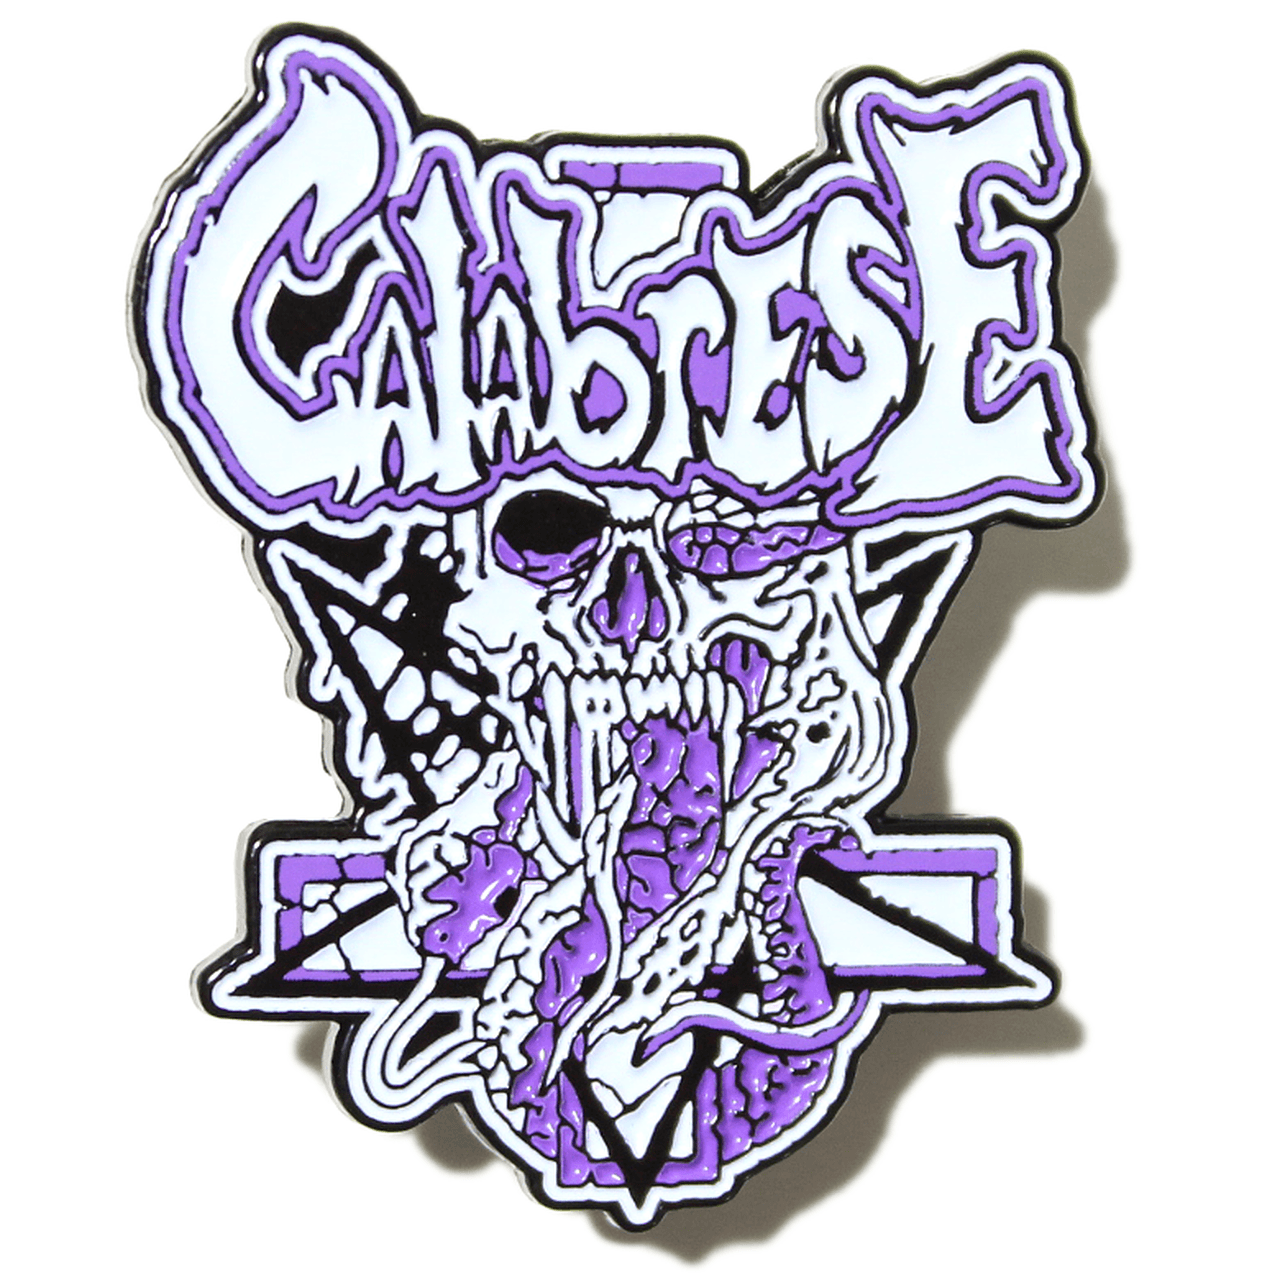 Calabrese Logo - CALABRESE- 1.5